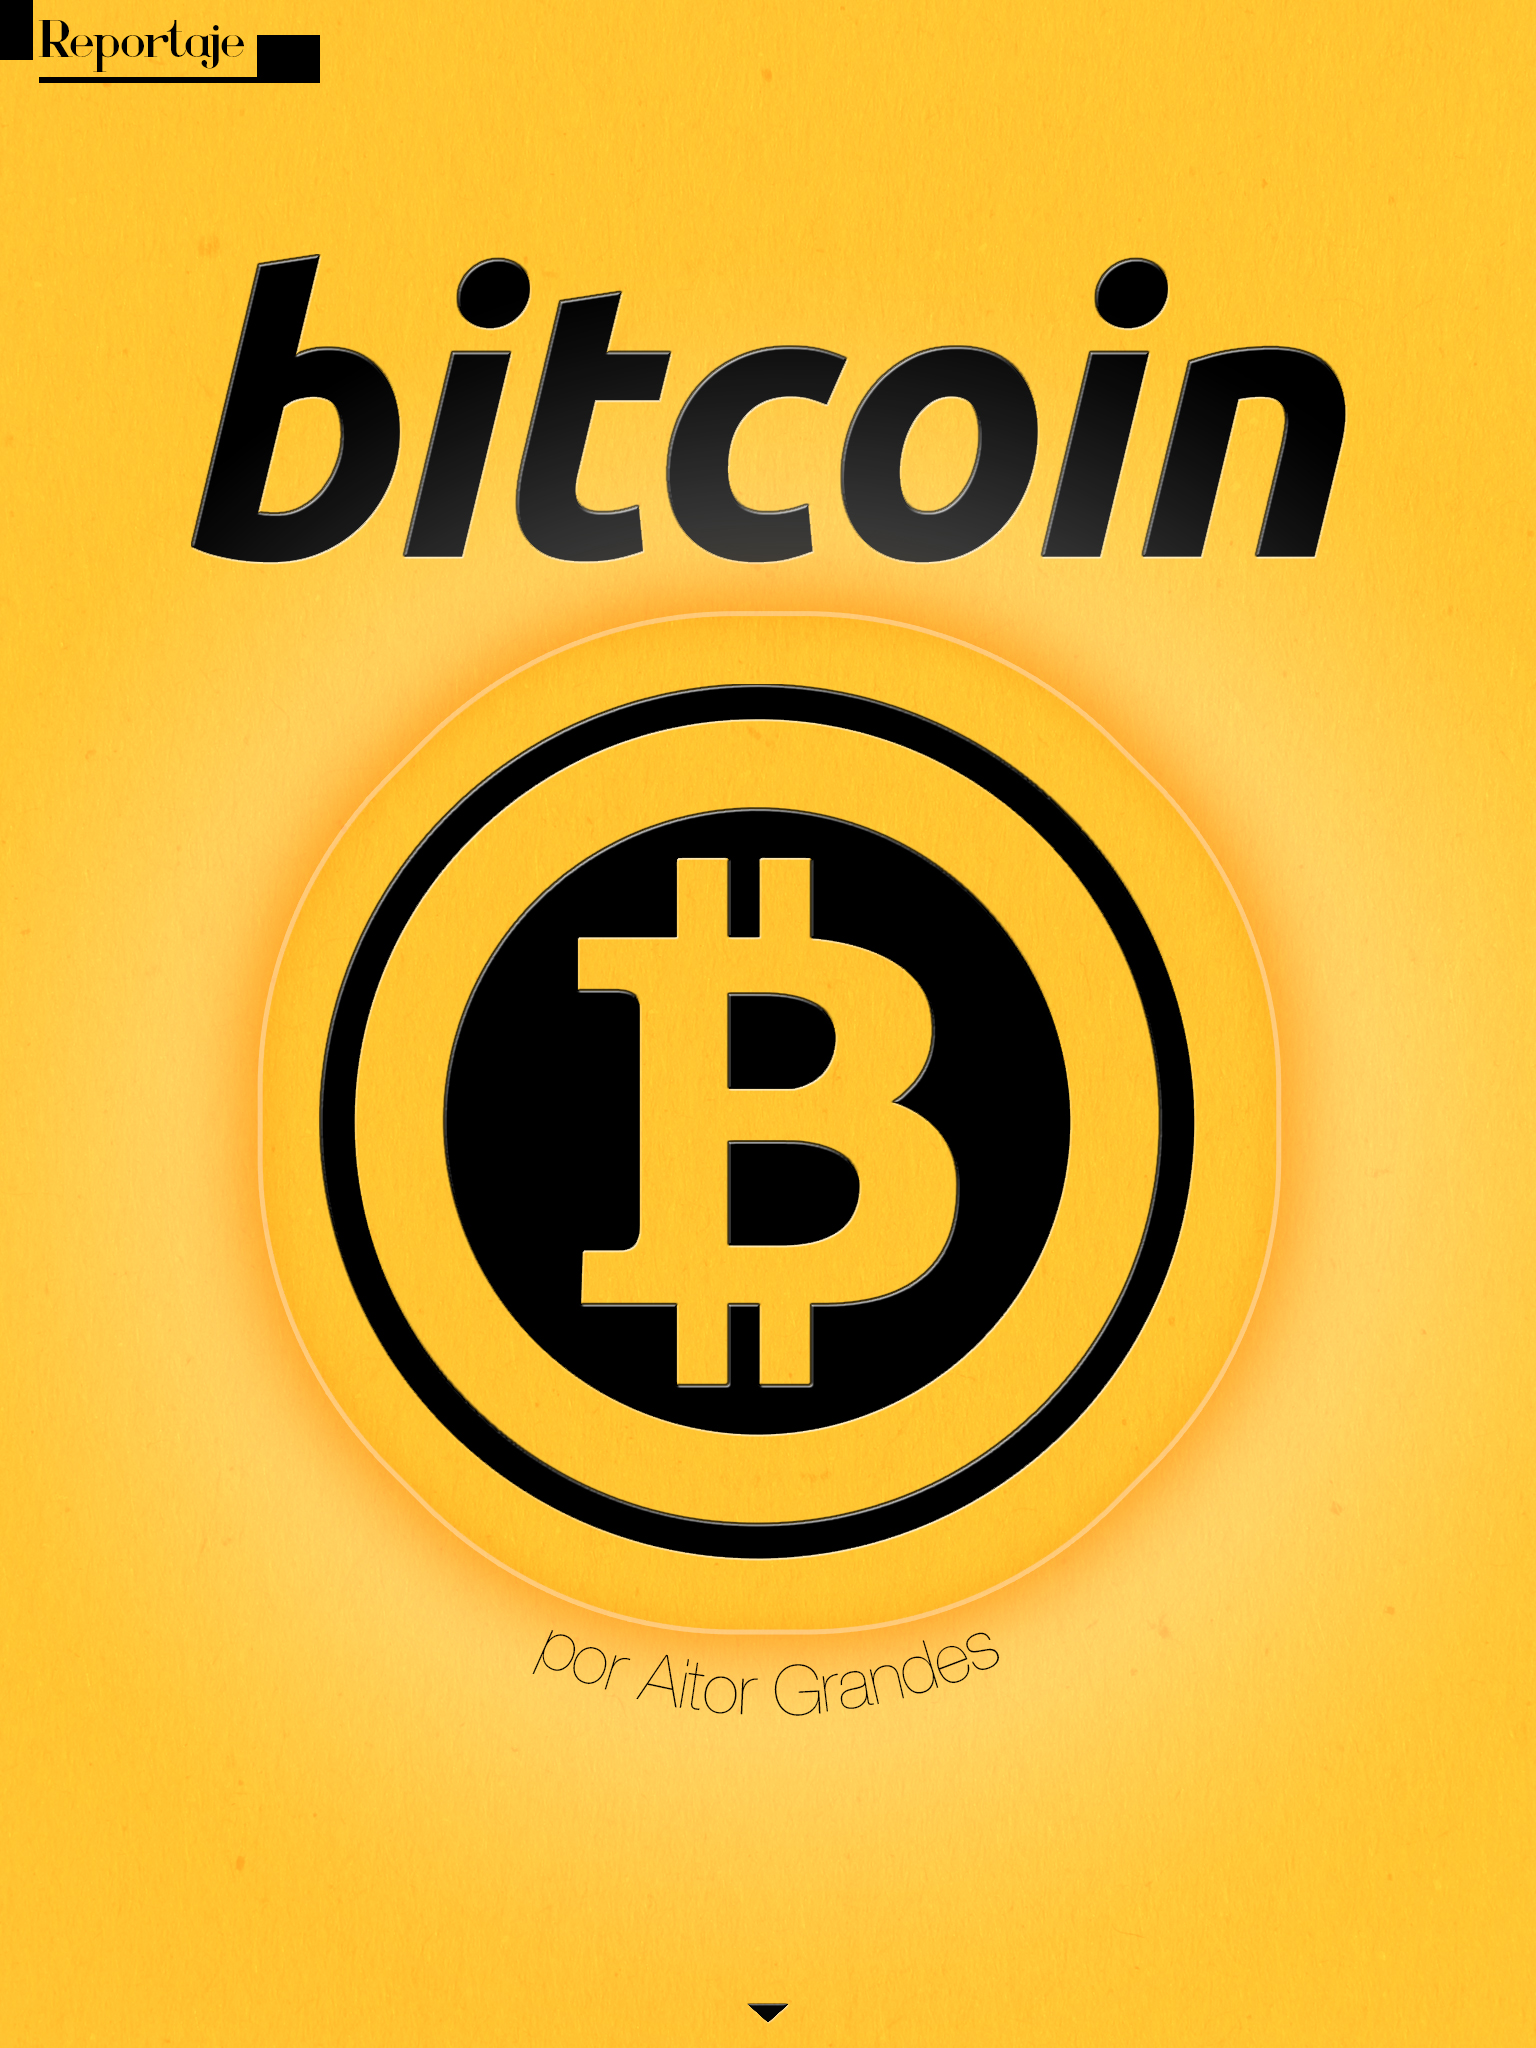 reportaje sobre los bitcoins. Continúa el artículo abajo